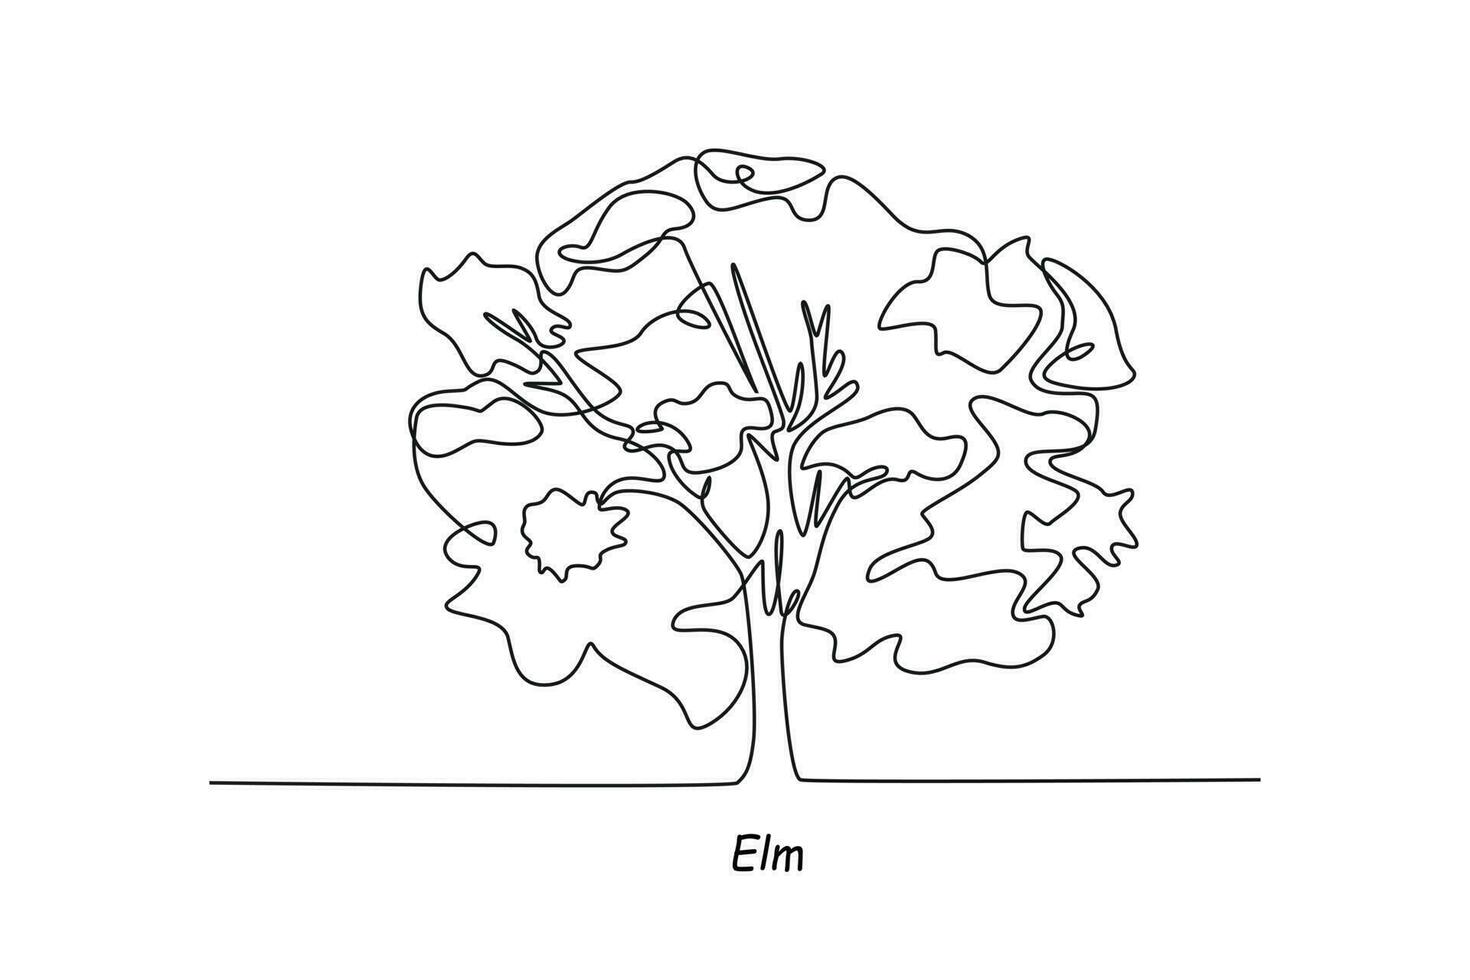 soltero uno línea dibujo olmo. árbol concepto. continuo línea dibujar diseño gráfico vector ilustración.